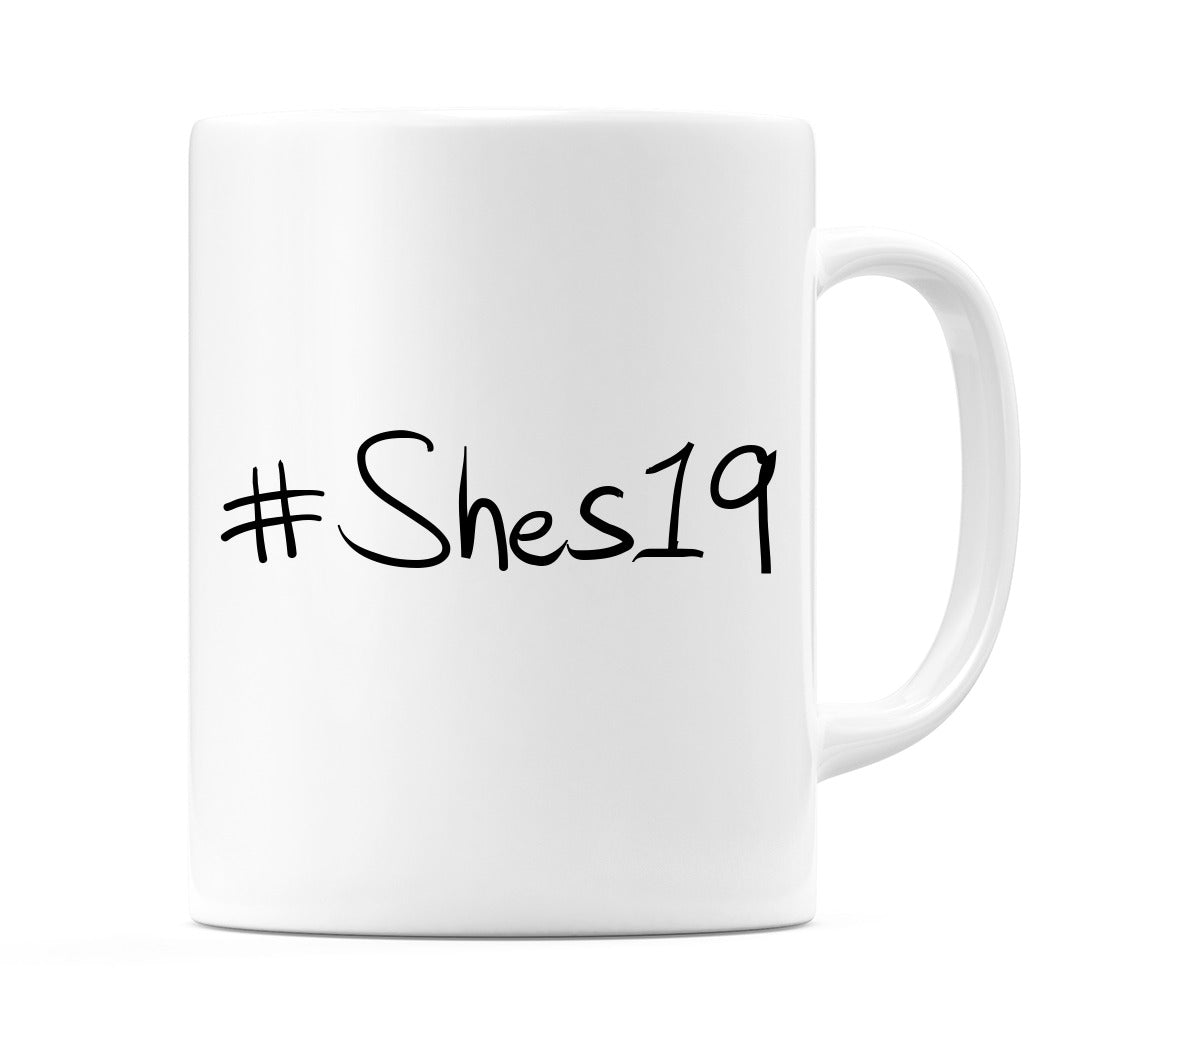 #Shes19 Mug